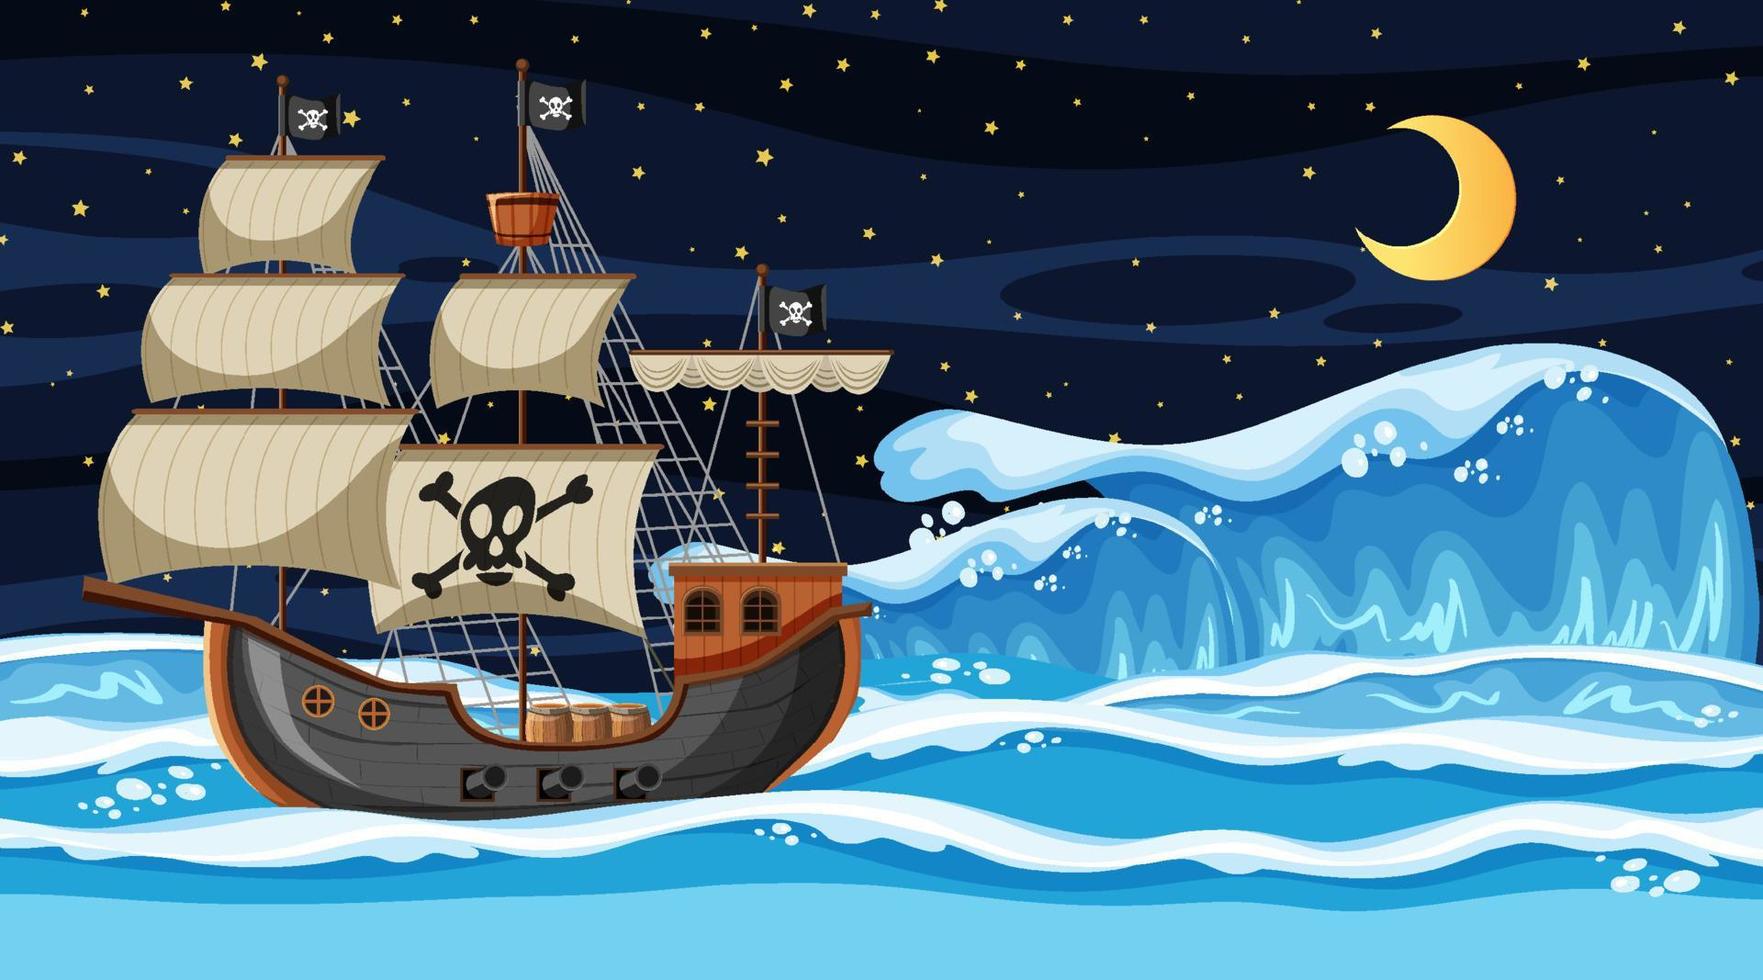 cena do oceano à noite com o navio pirata em estilo cartoon vetor